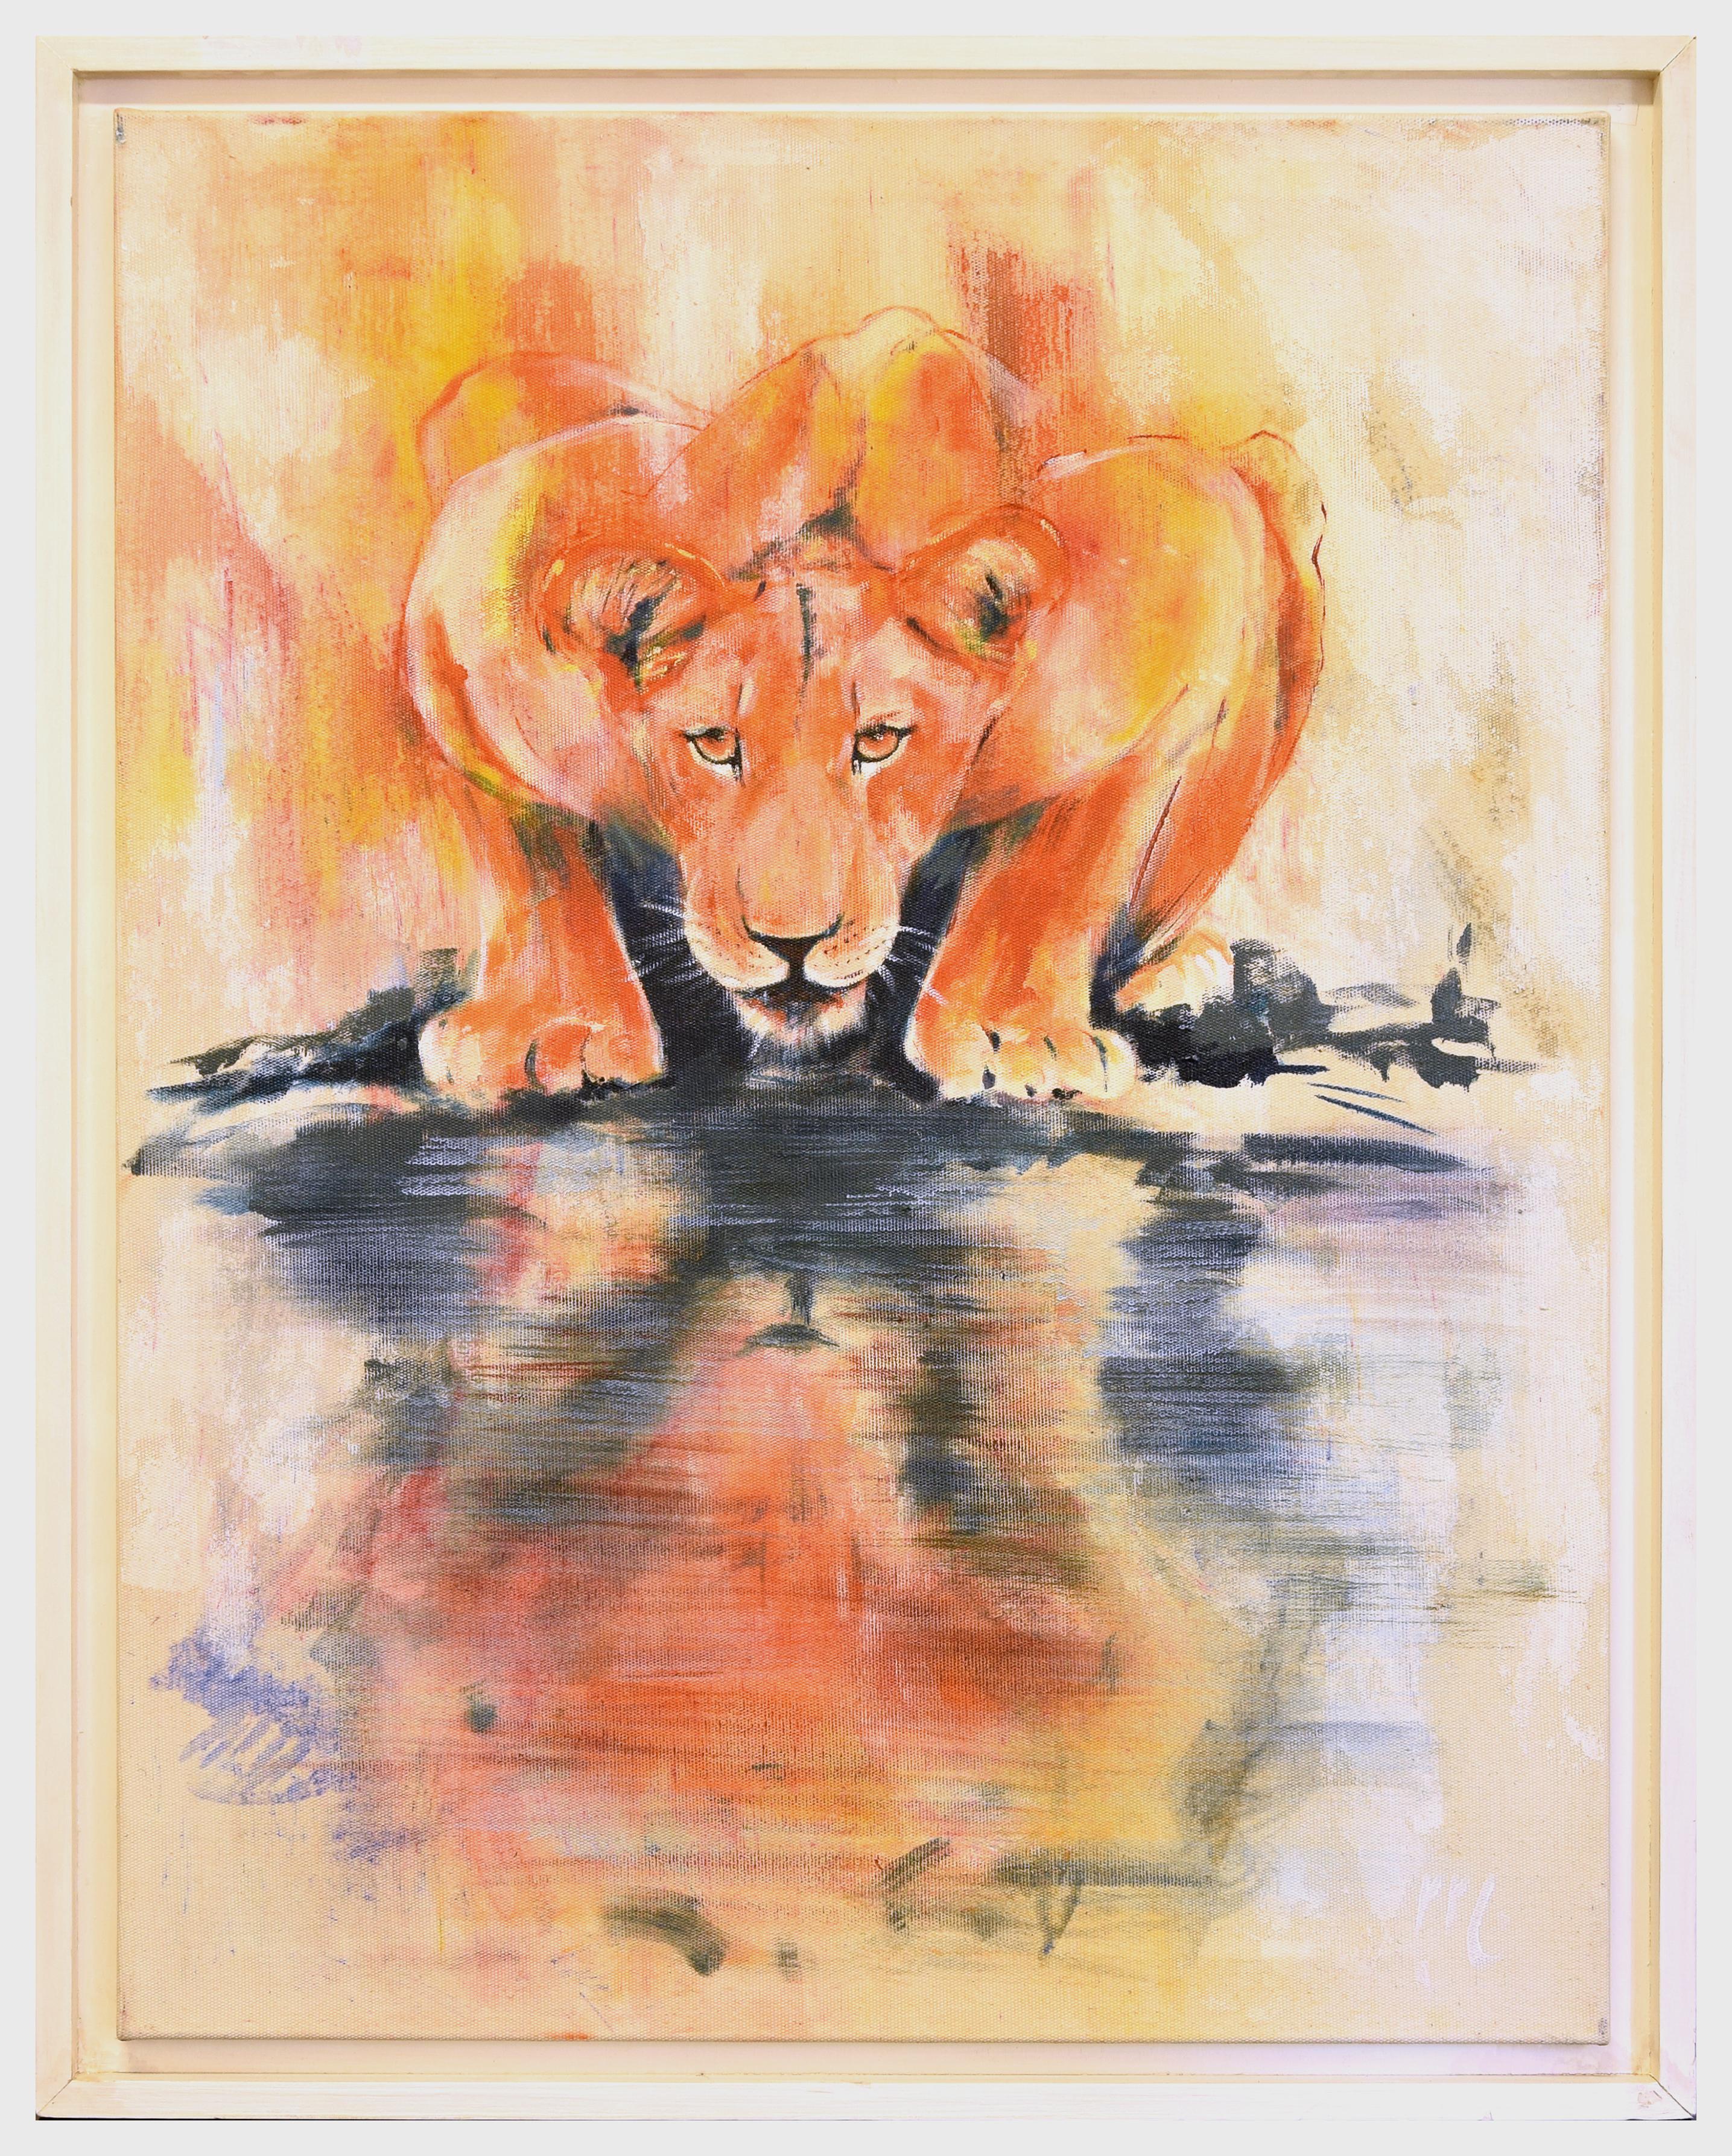 Lioness by the Water – Öl auf Leinwand von Marij Hendrickx – Anfang der 2000er Jahre